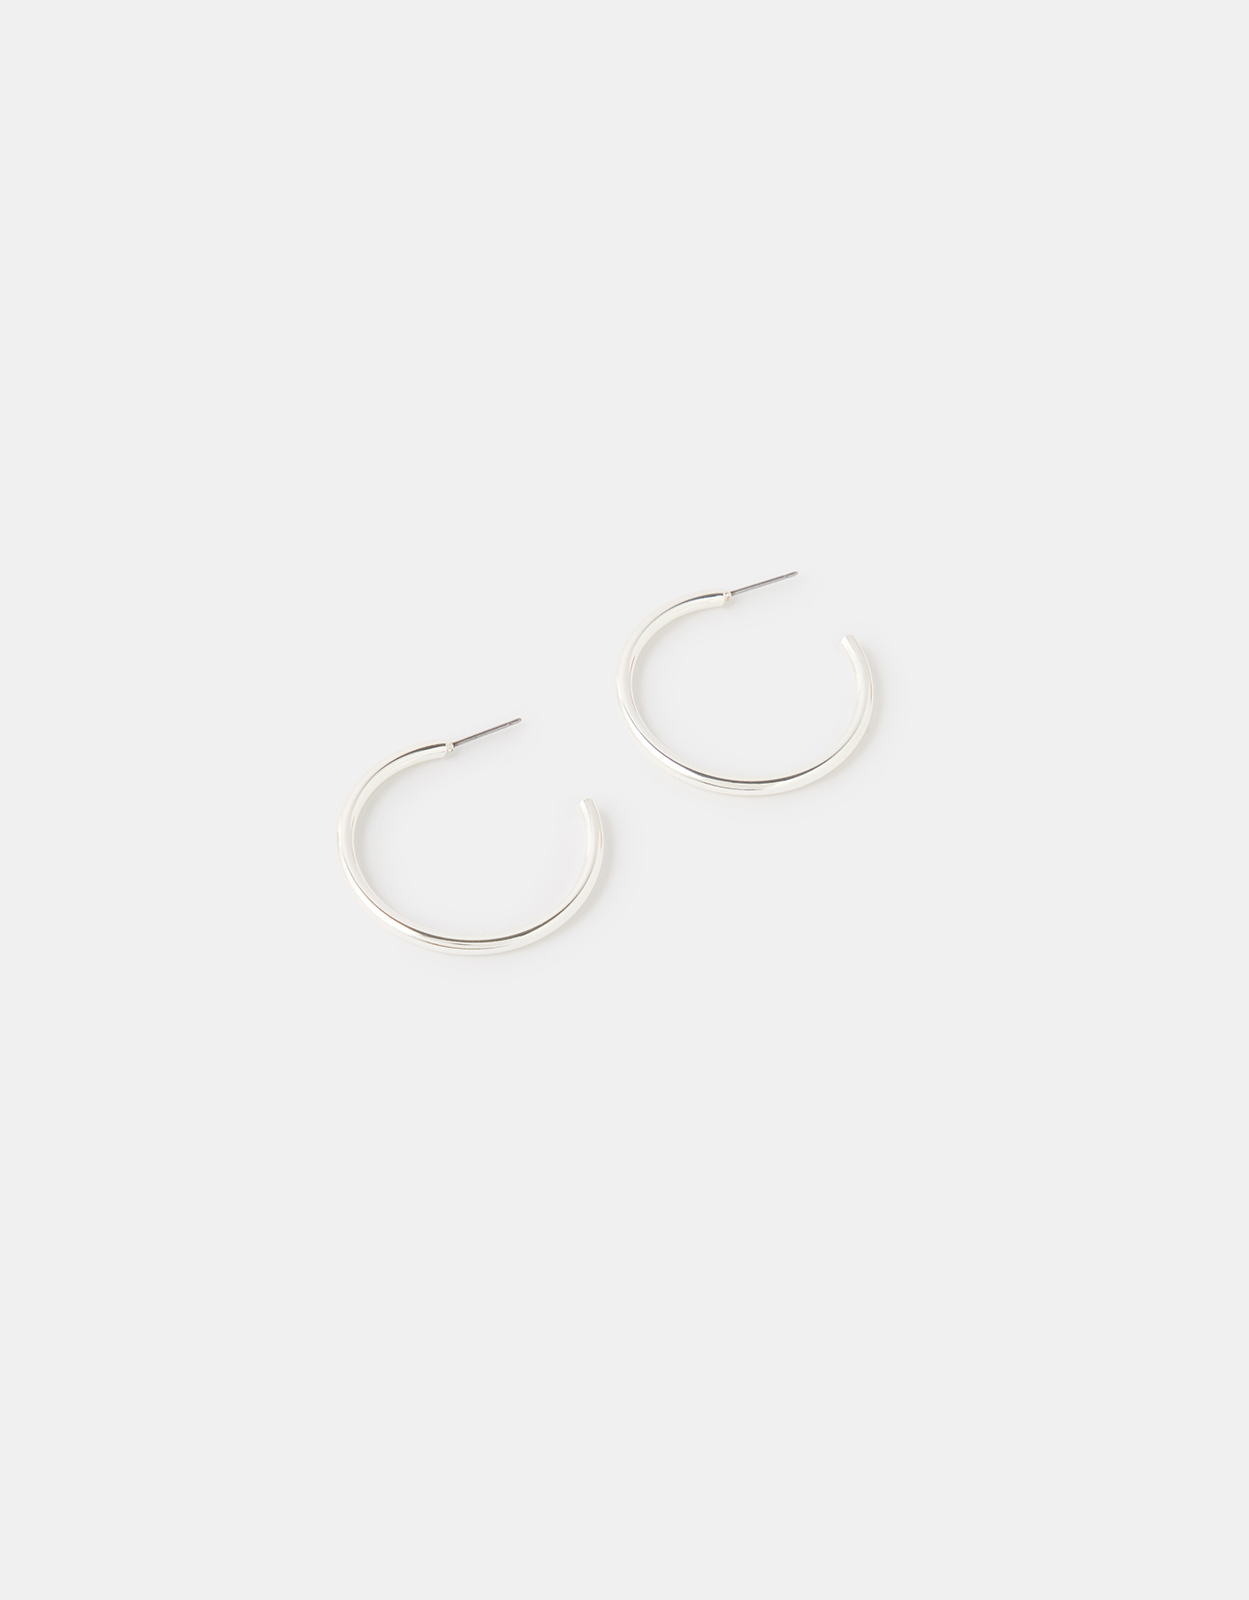 Accessorize Women's Silver Classic Steel Medium Tube Hoop Earrings, Size: 4x5cm